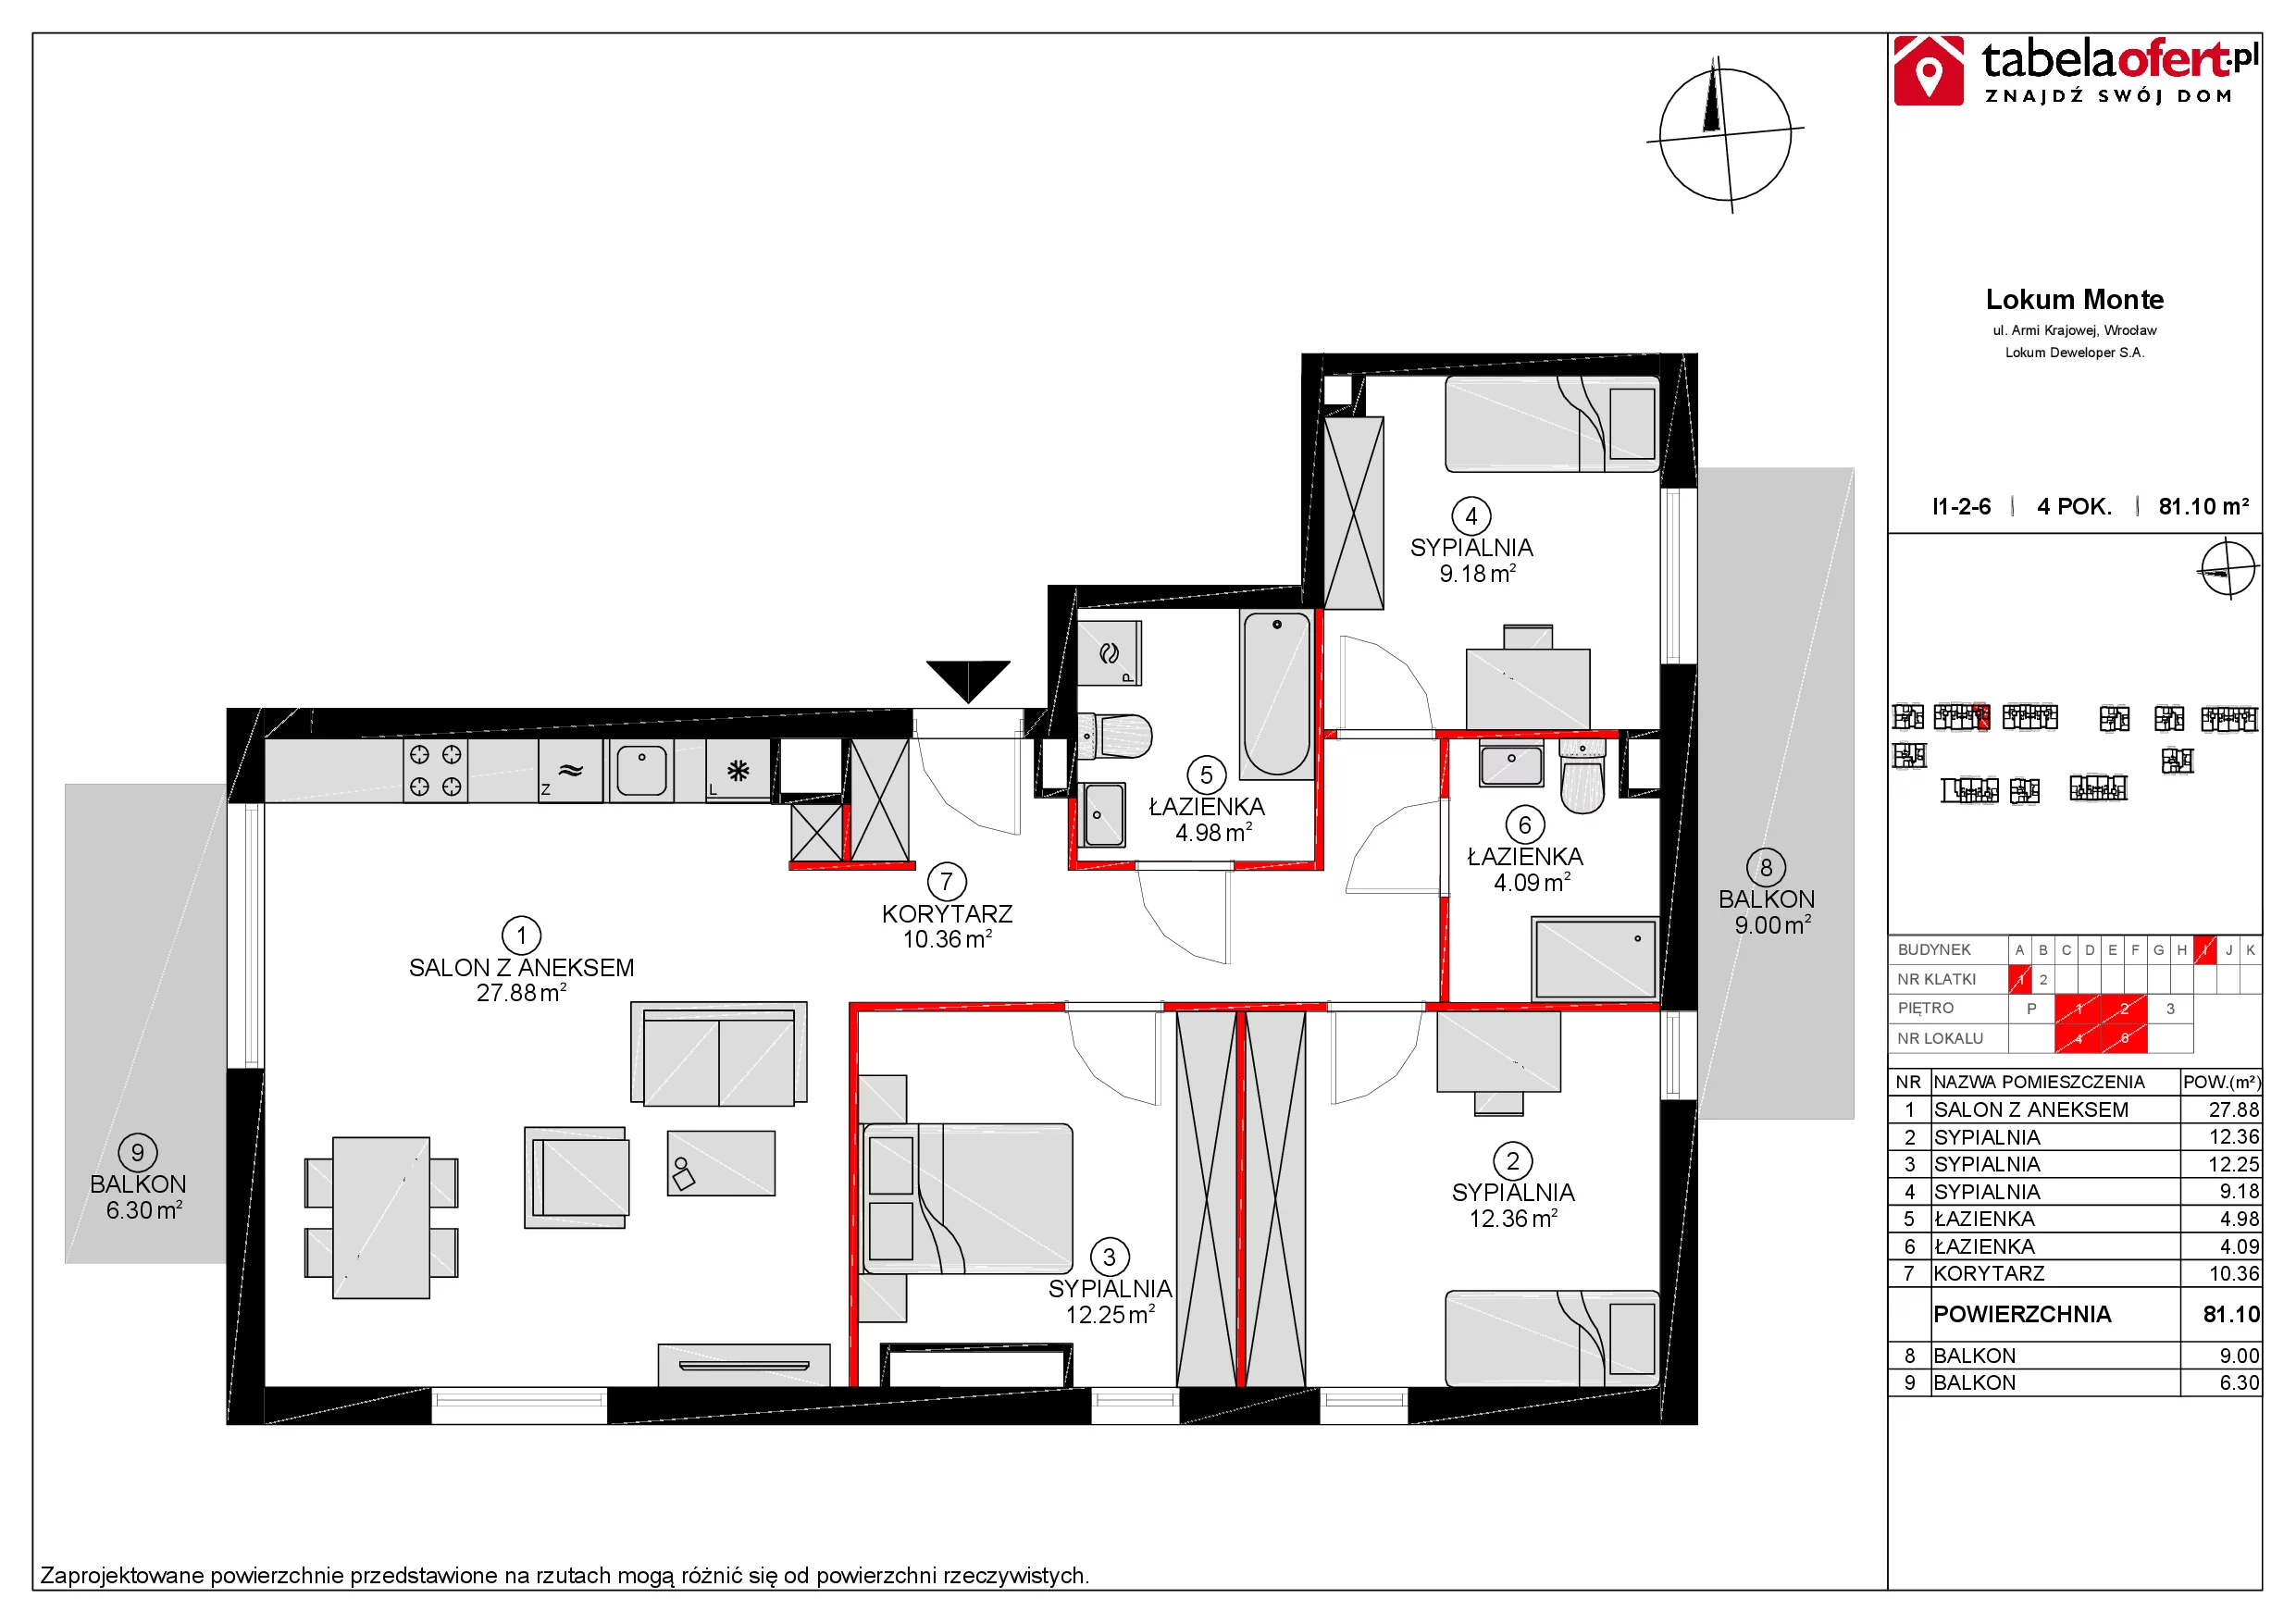 Mieszkanie 81,08 m², piętro 2, oferta nr I1-2-6, Lokum Monte, Sobótka, ul. Armii Krajowej